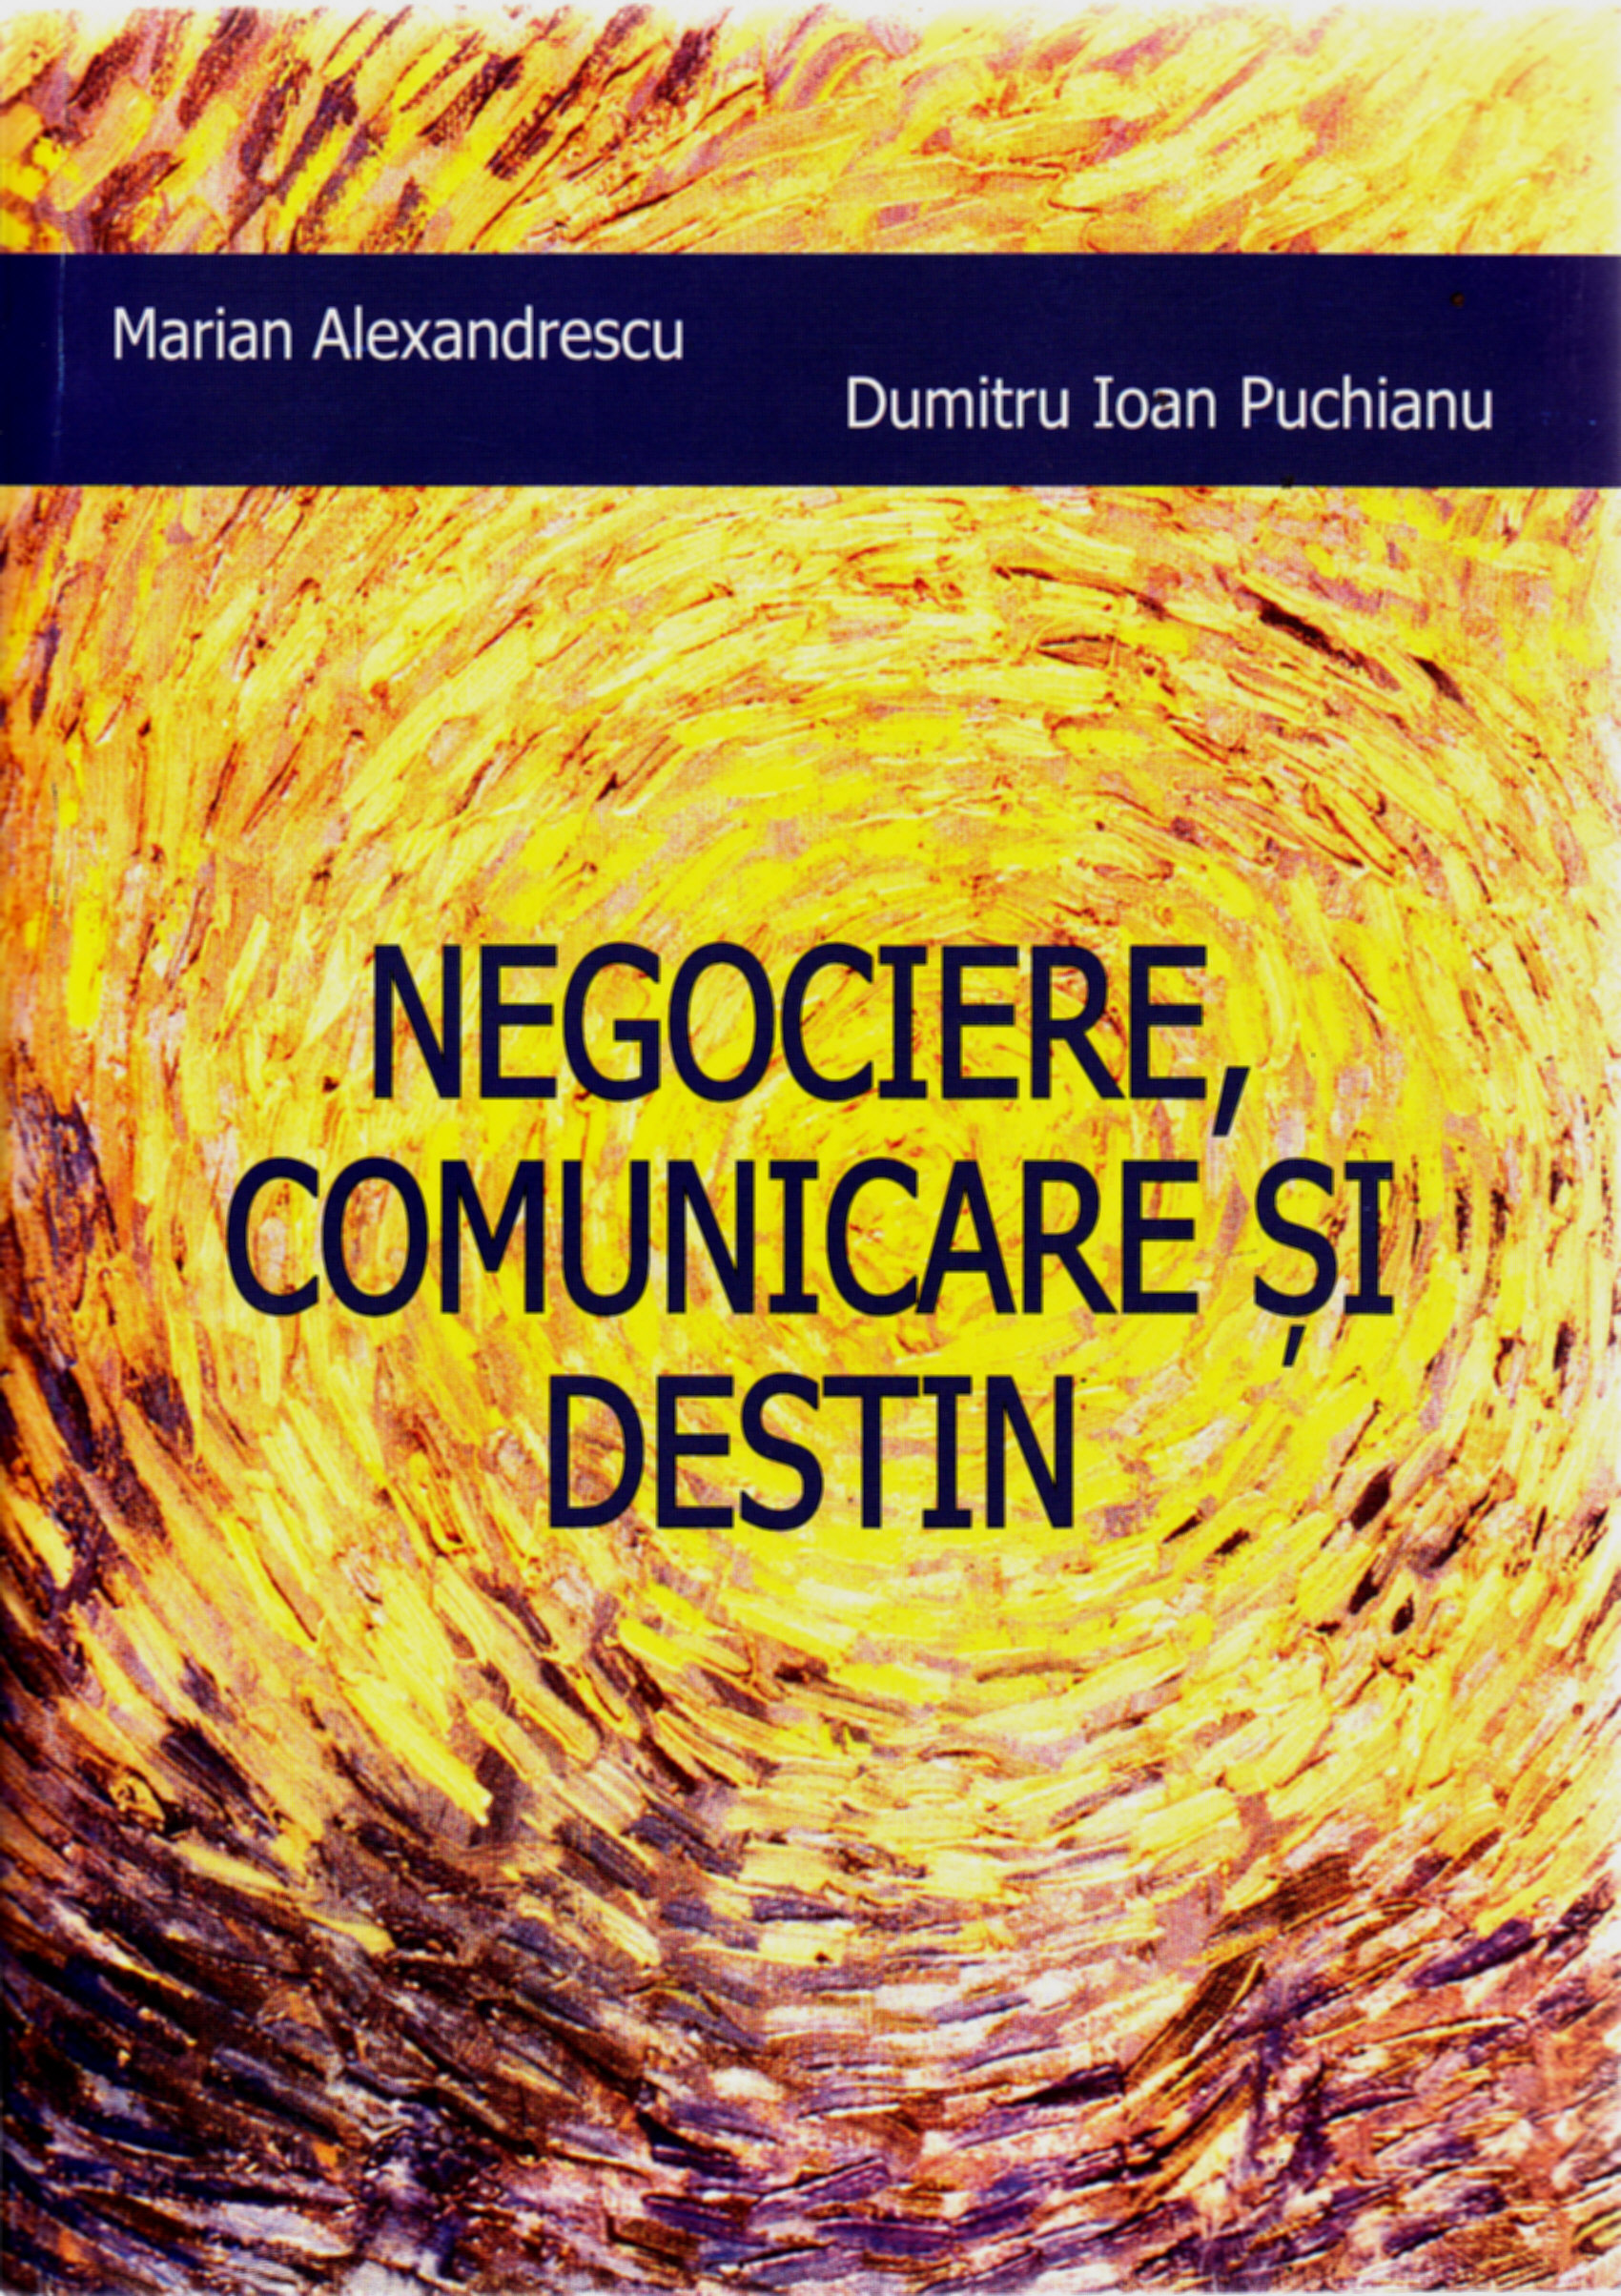 Negociere, comunicare si destin - Marian Alexandrescu, Dumitru Ioan Puchianu